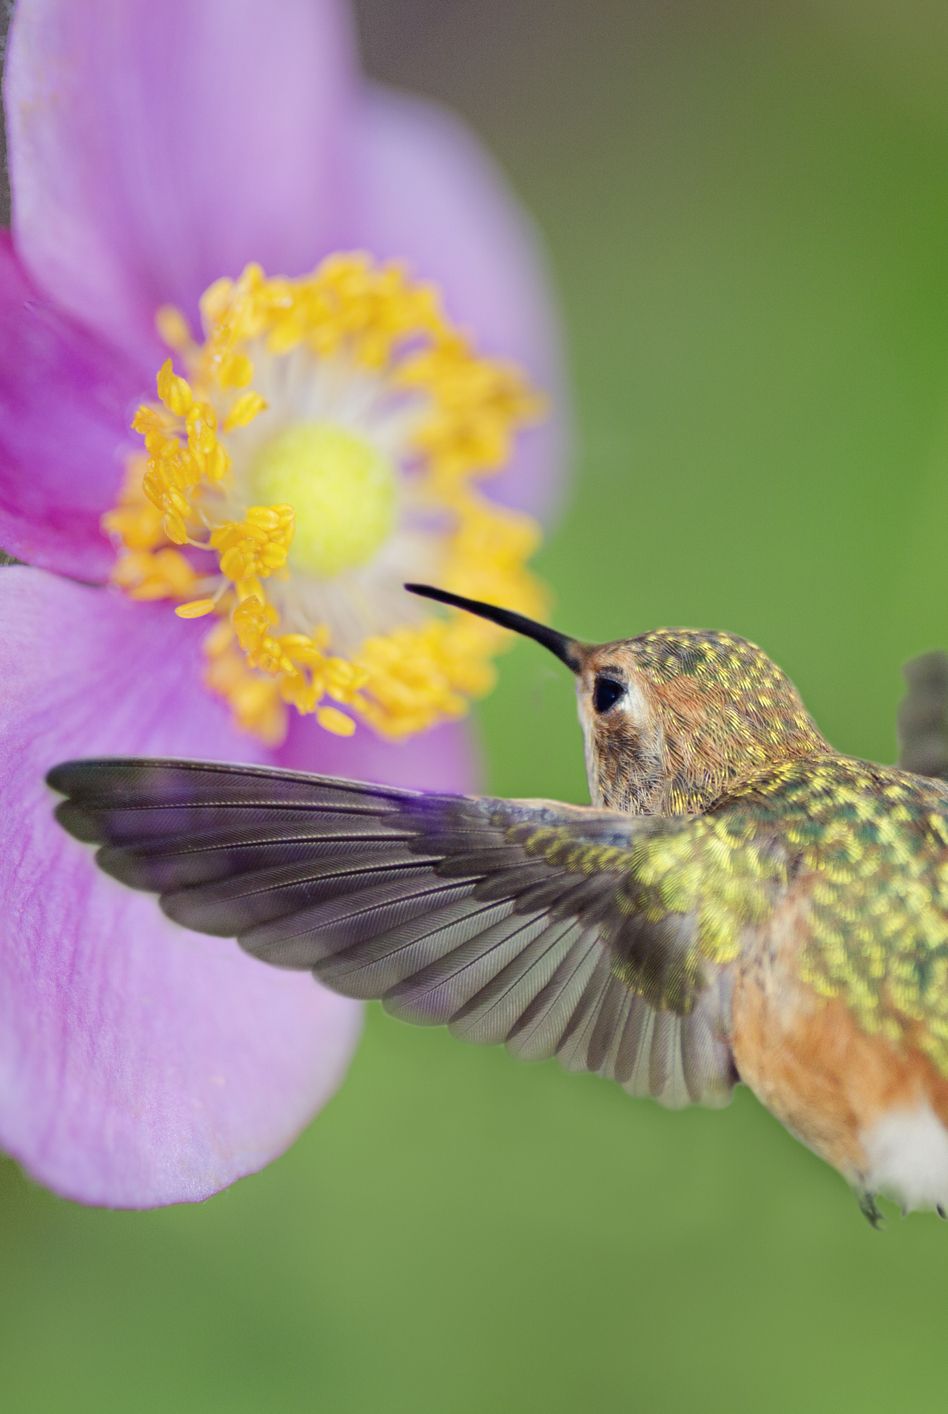 allen's hummingbird at anemone flower